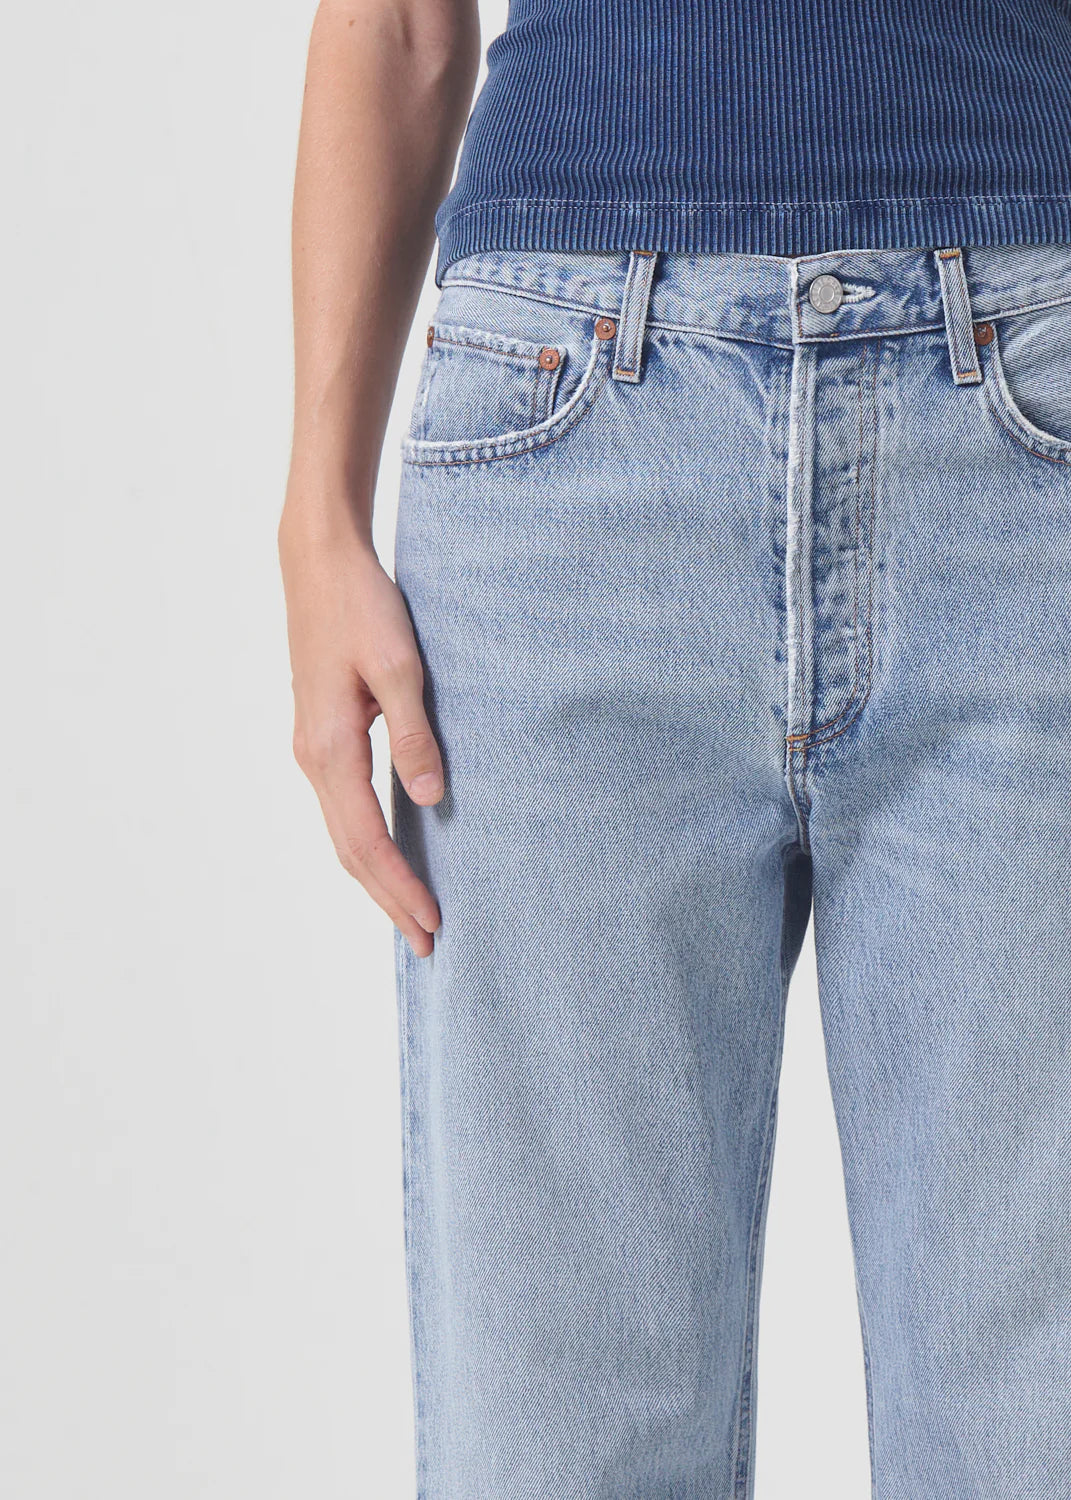 AGOLDE women's retro-inspired straight leg jeans in light blue.